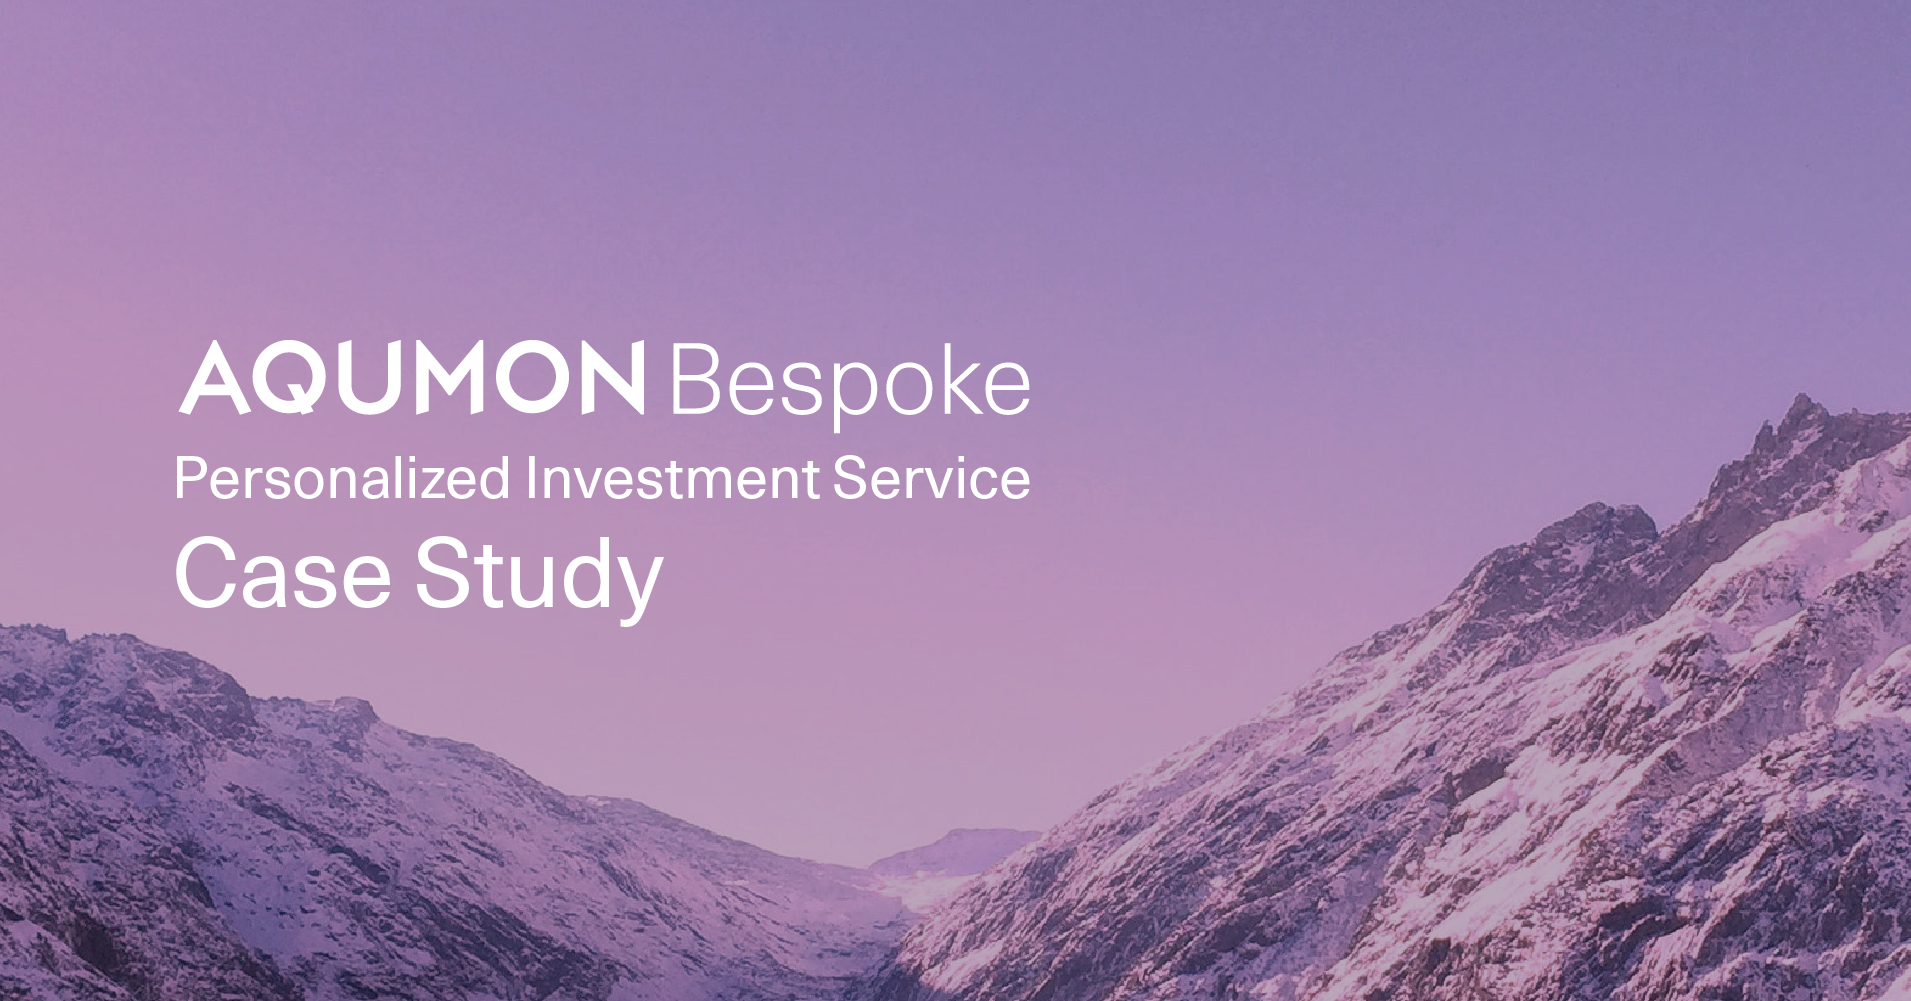 科學、個人化投資服務 拆解 AQUMON Bespoke 客戶真實體驗